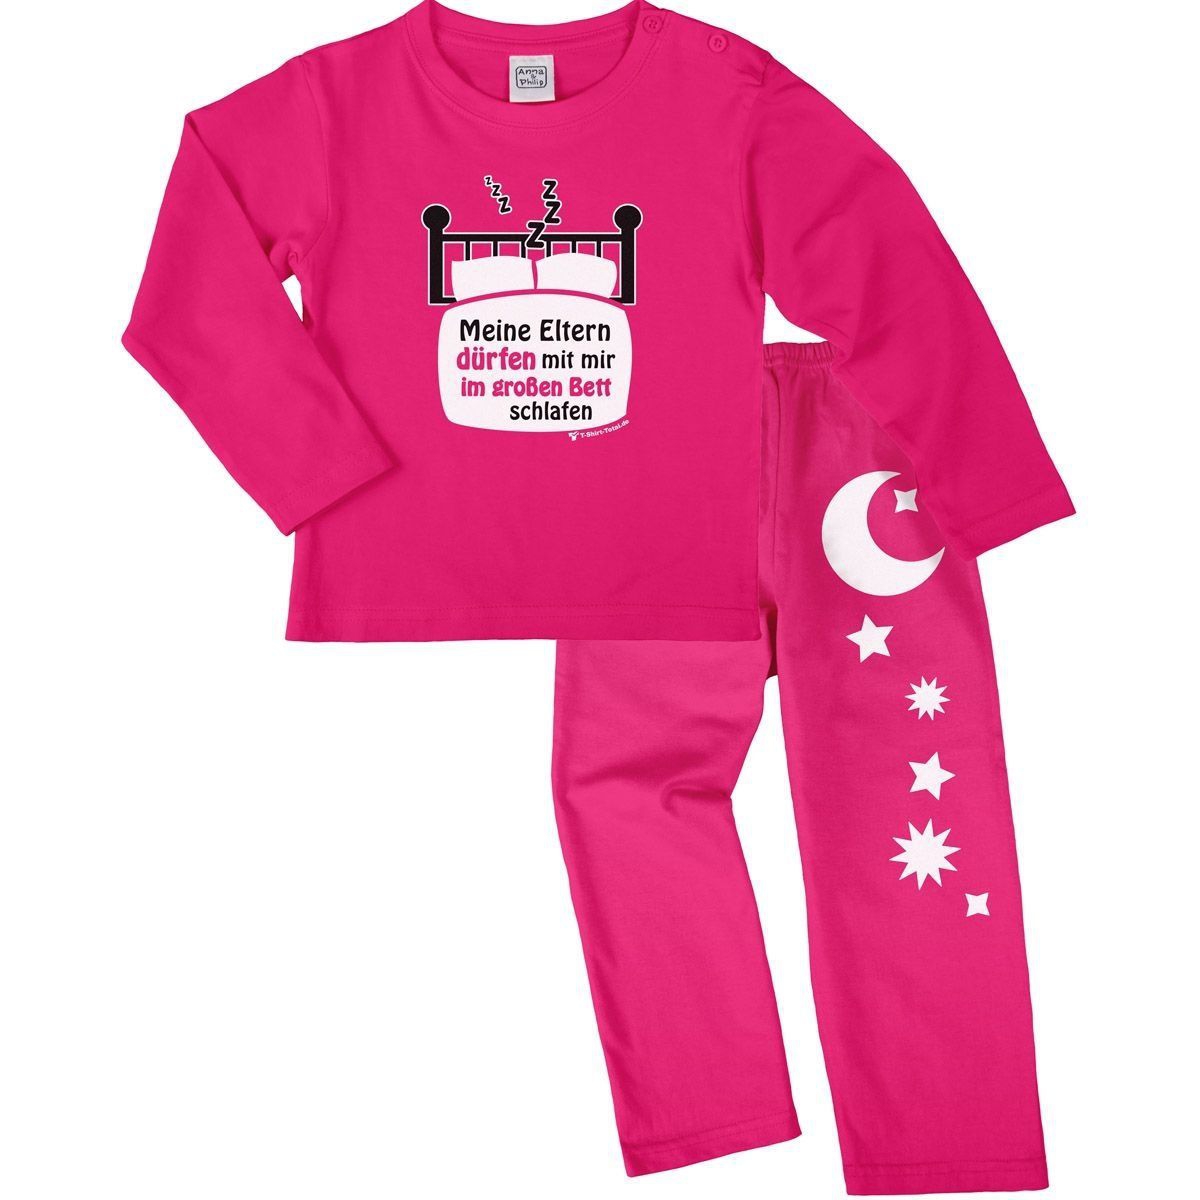 Im großen Bett schlafen Pyjama Set pink / pink 92